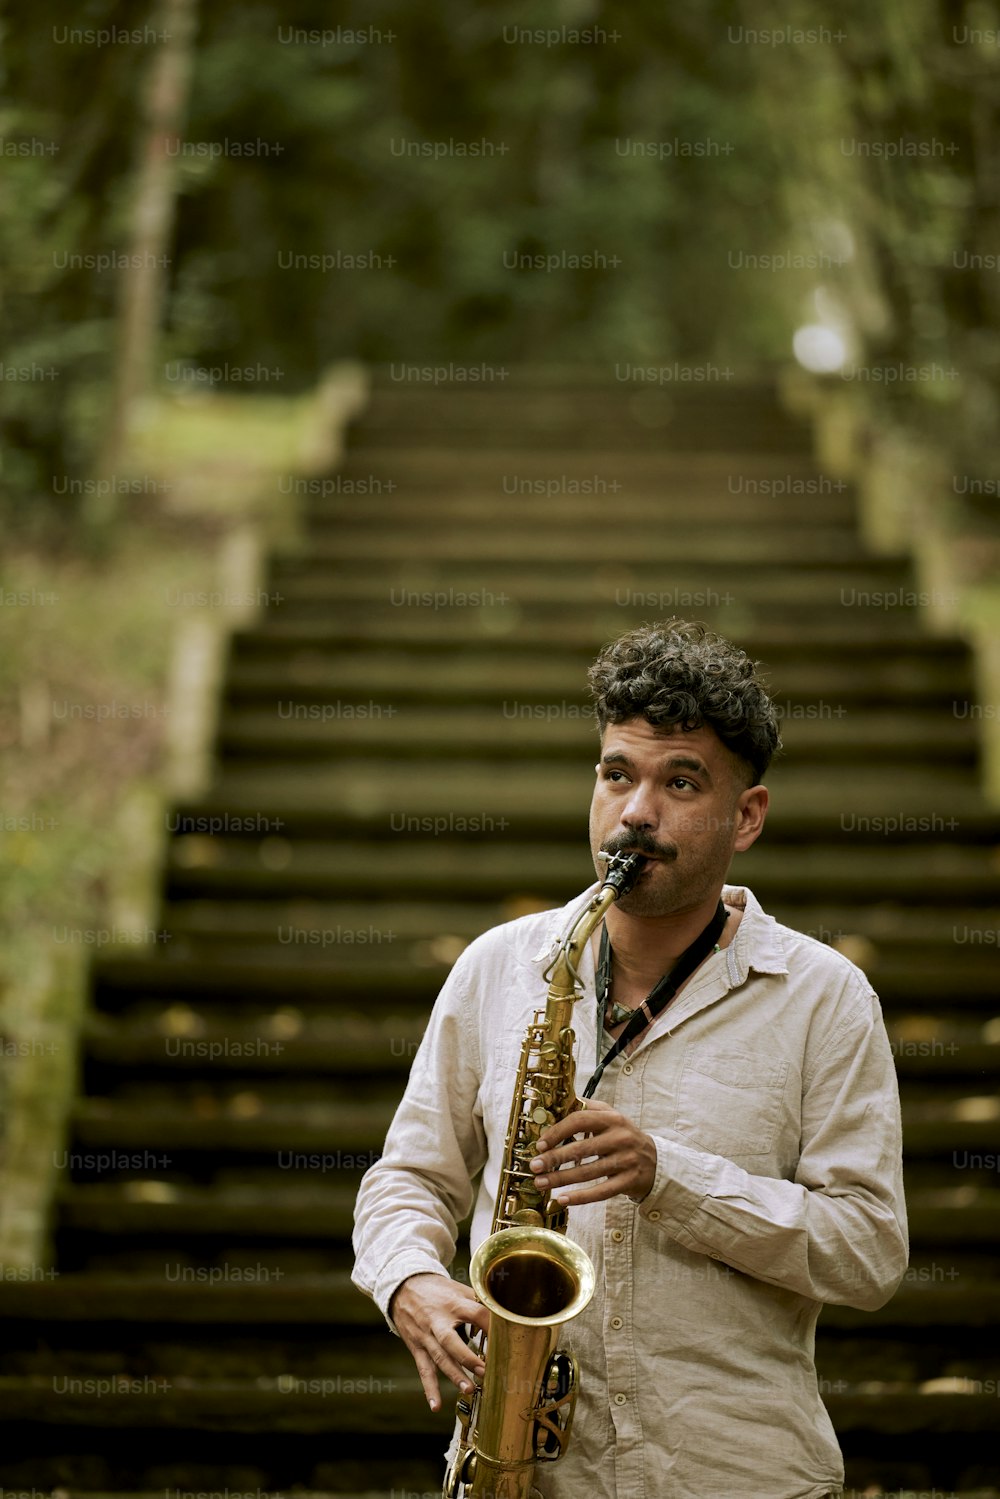 Un hombre tocando un saxofón frente a un conjunto de escaleras